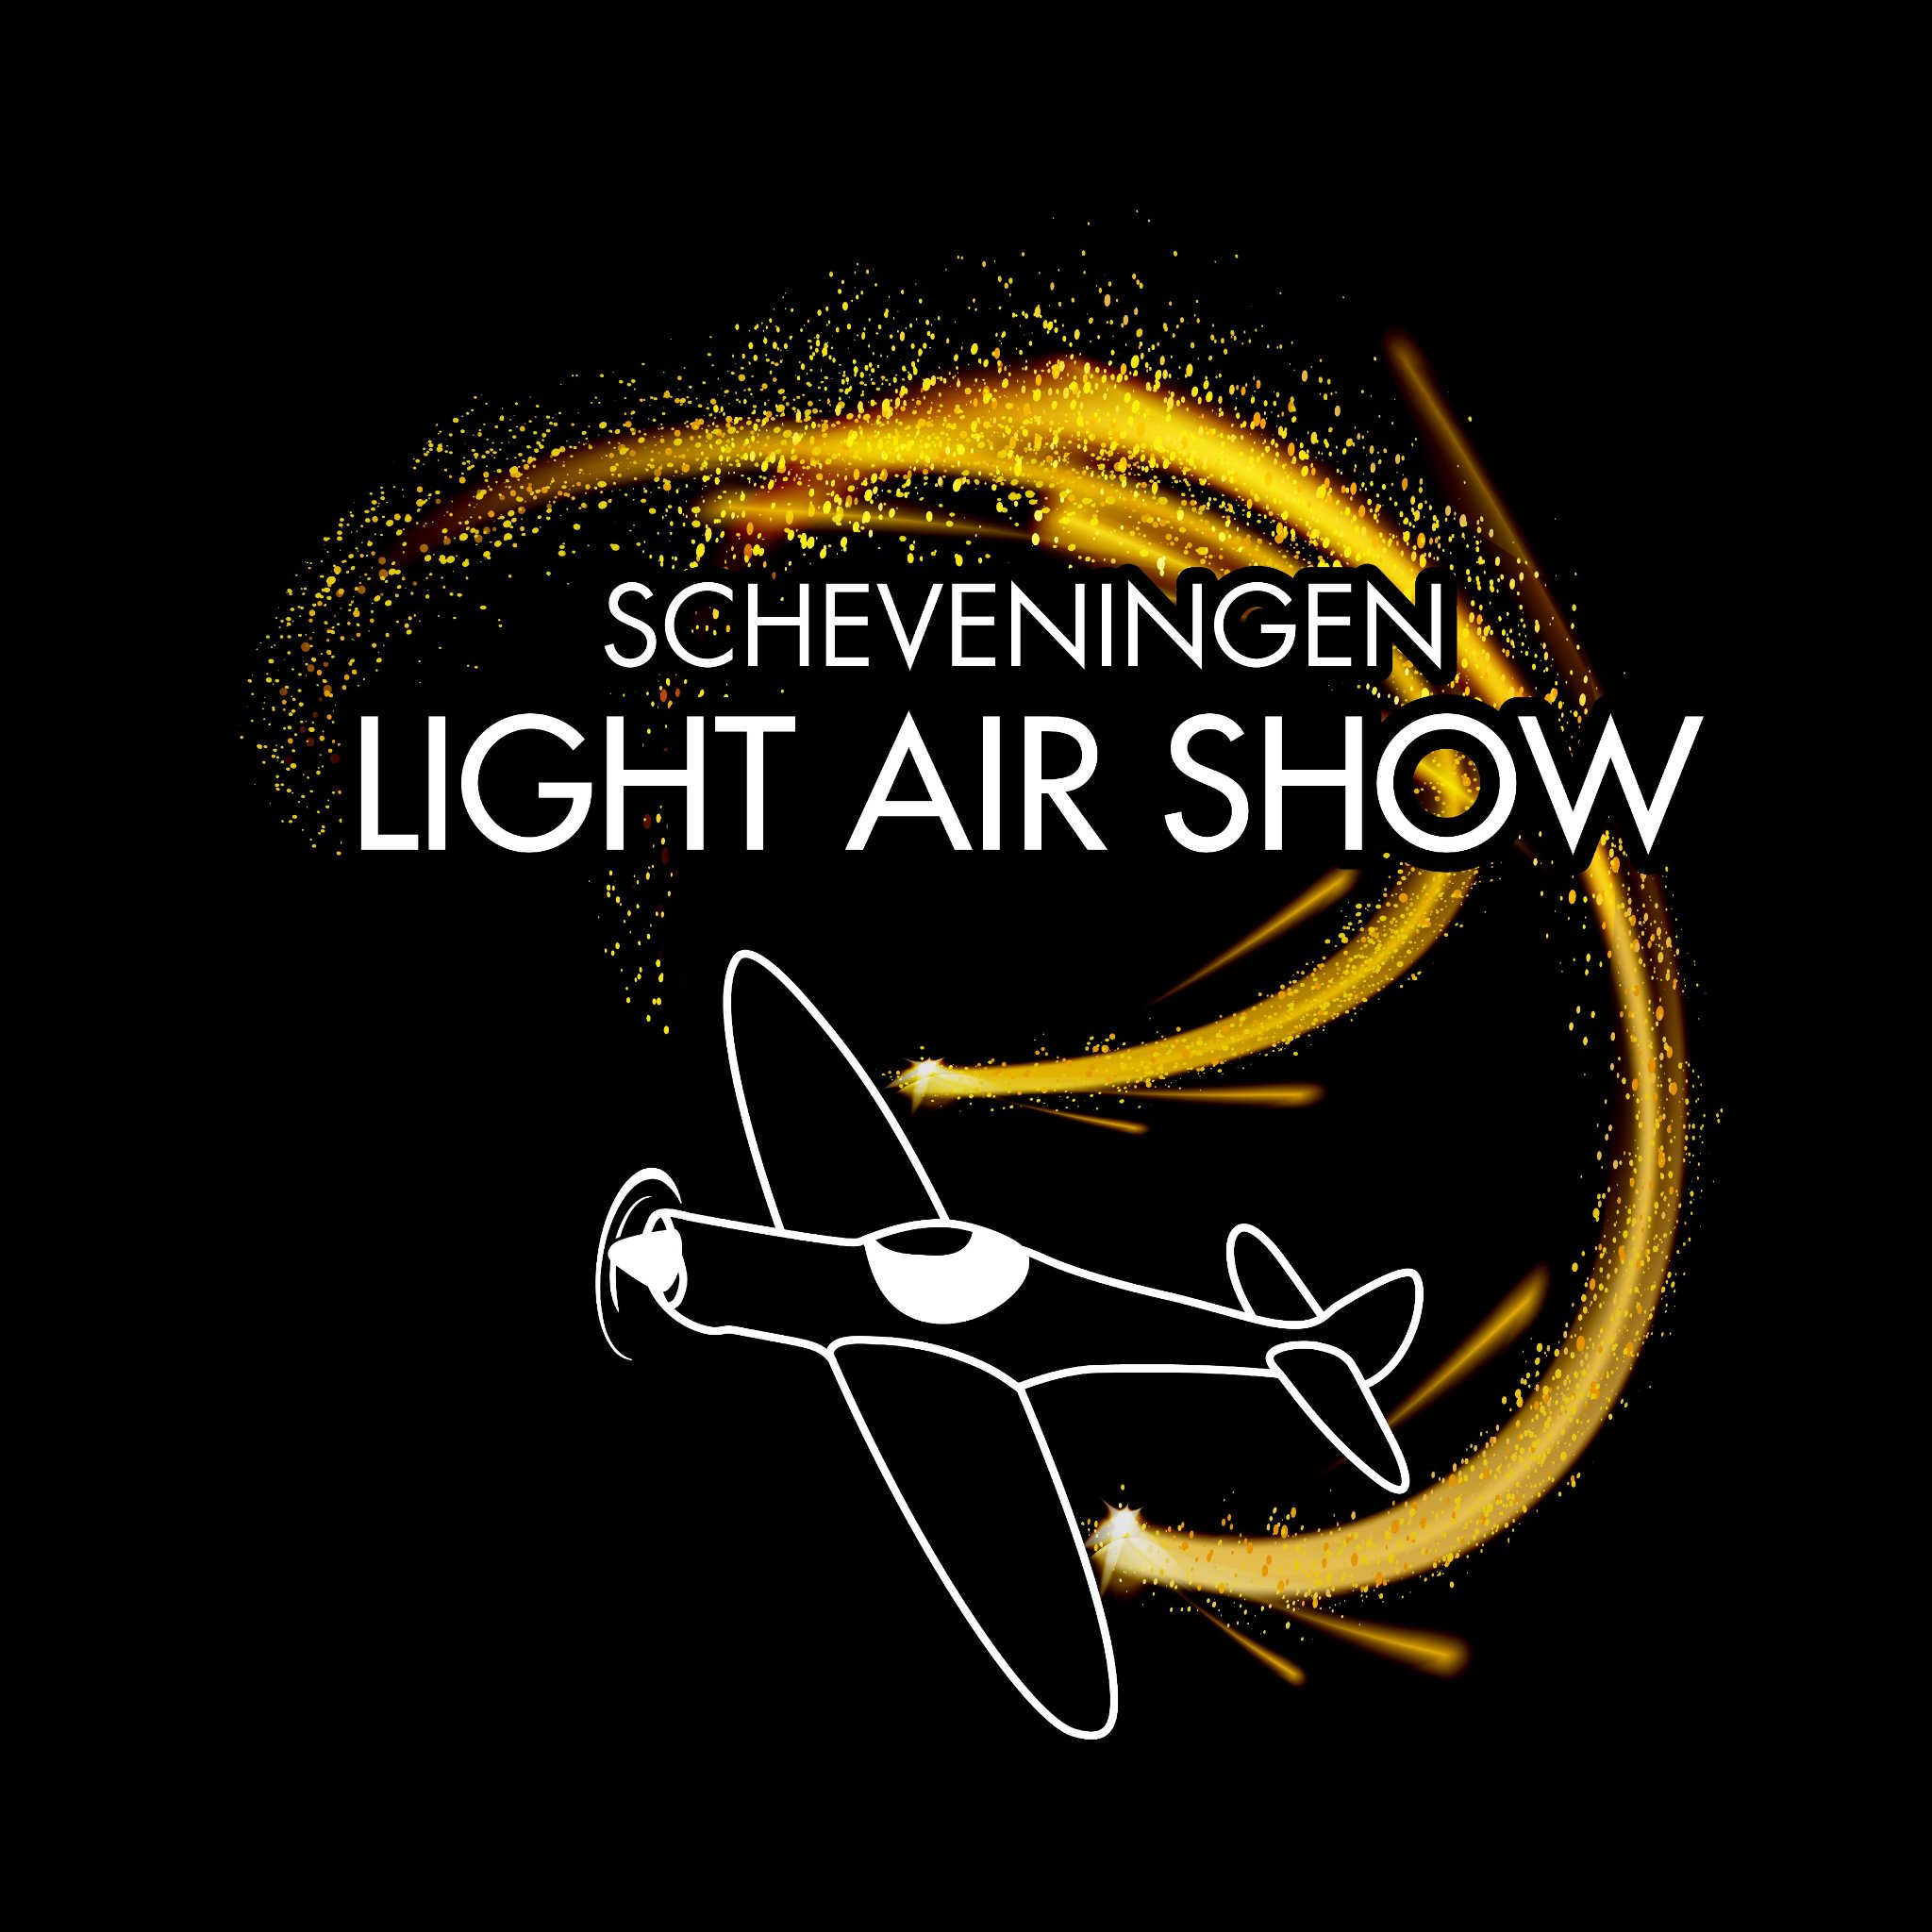 Op zaterdag 1 december 2018, om 16.30 uur vindt een Airshow plaats boven zee in Scheveningen met stuntvliegtuigen, uitgerust met LED en Pyrotechnieken.